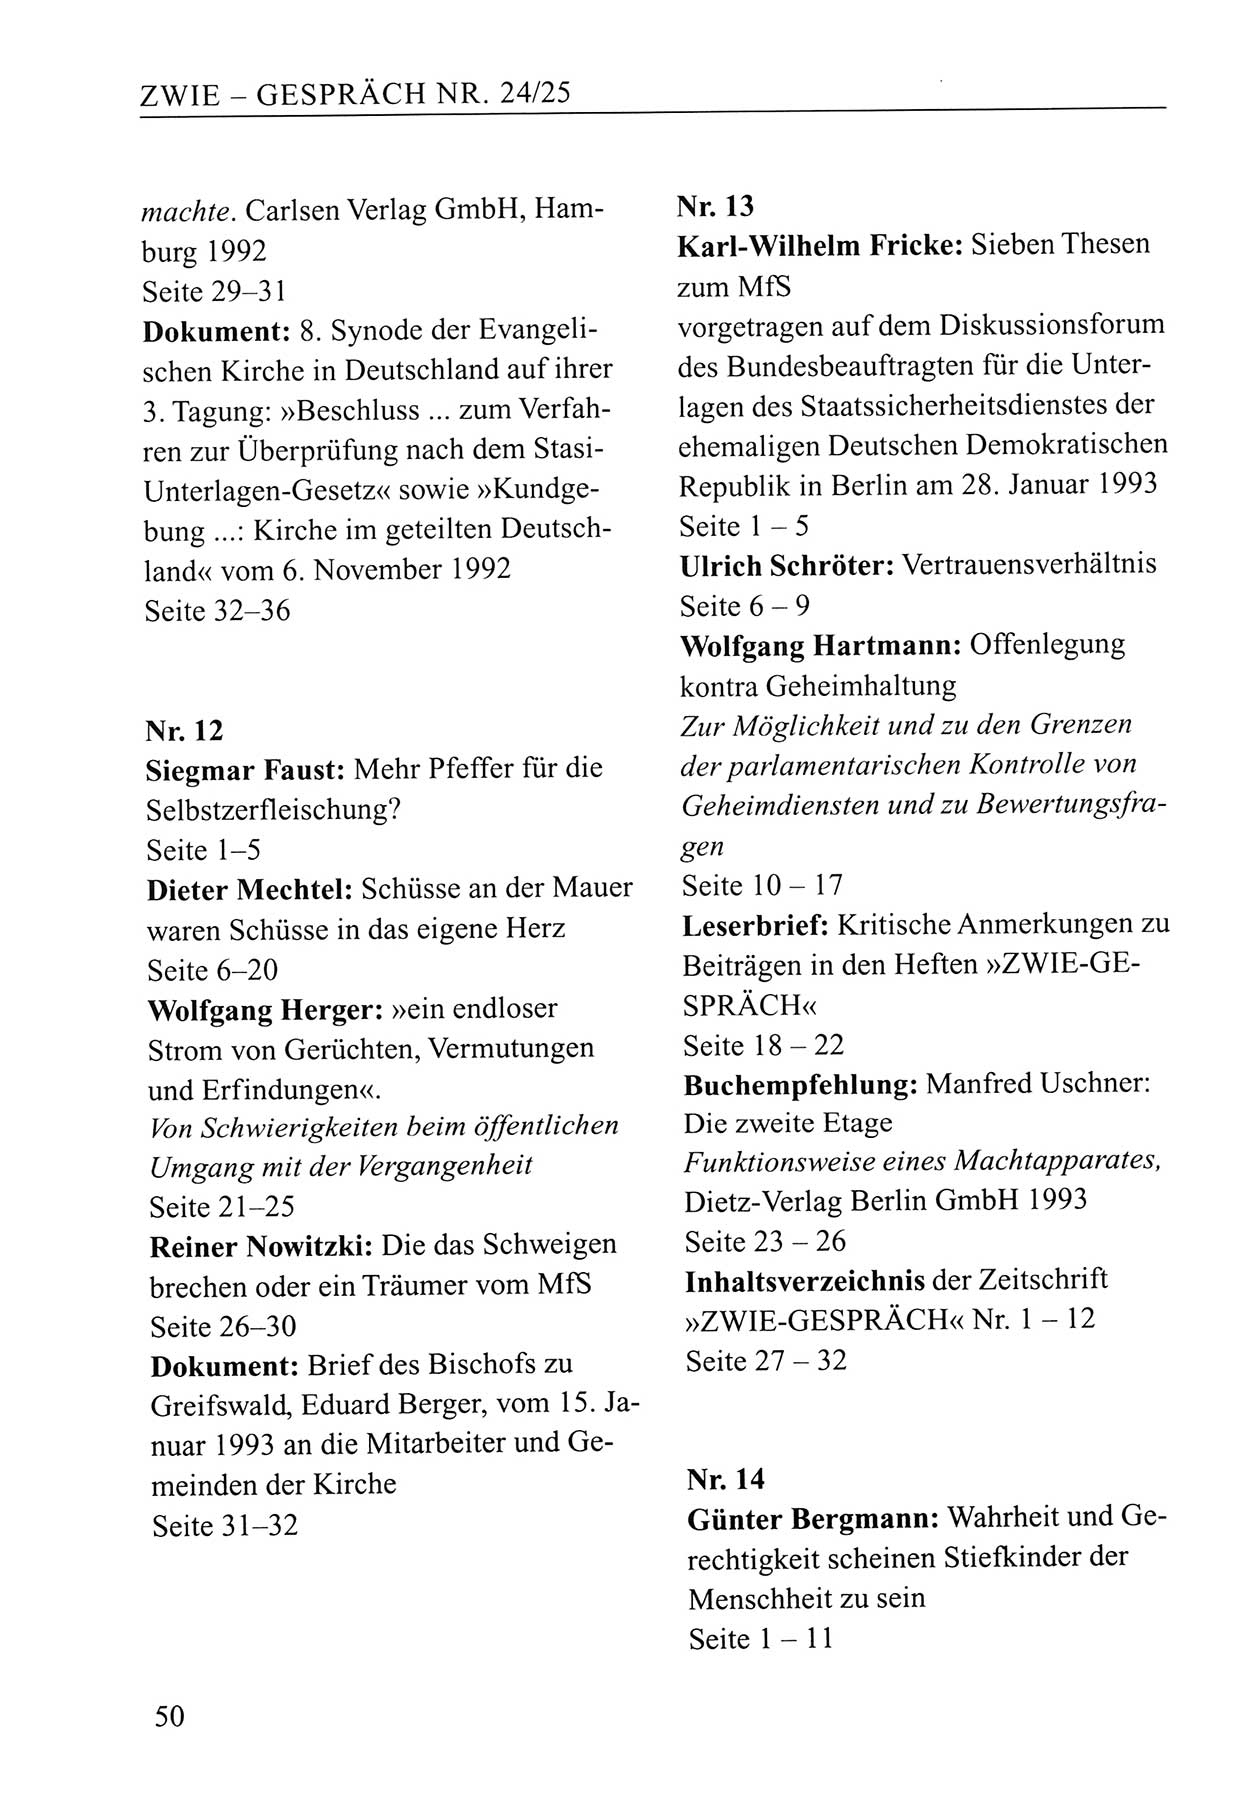 Zwie-Gespräch, Beiträge zum Umgang mit der Staatssicherheits-Vergangenheit [Deutsche Demokratische Republik (DDR)], Ausgabe Nr. 24/25, Berlin 1994, Seite 50 (Zwie-Gespr. Ausg. 24/25 1994, S. 50)